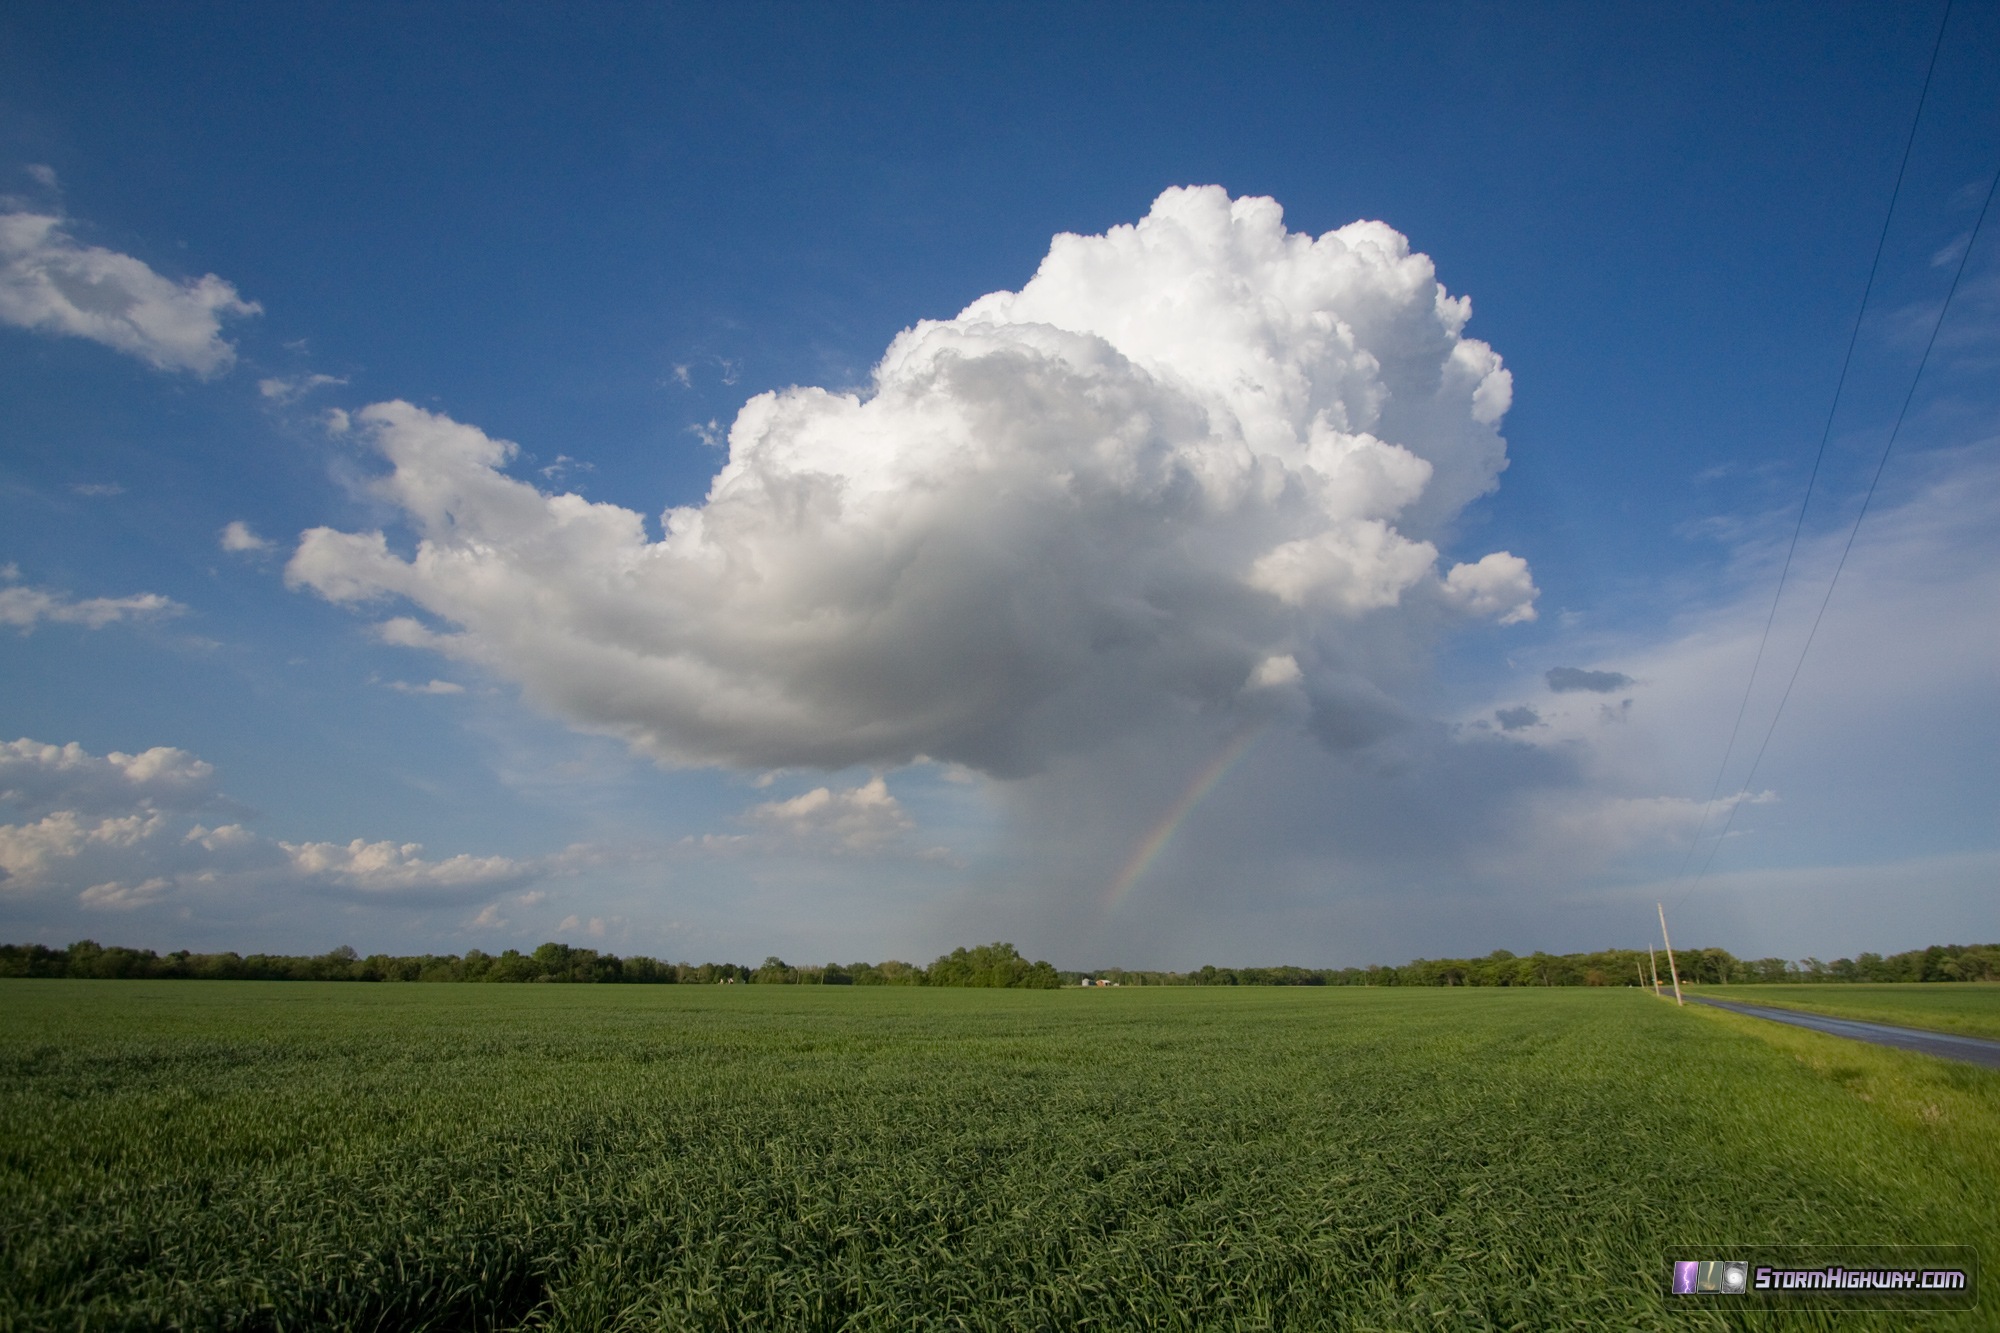 Storm and rainbow near Trenton, IL - May 9, 2014